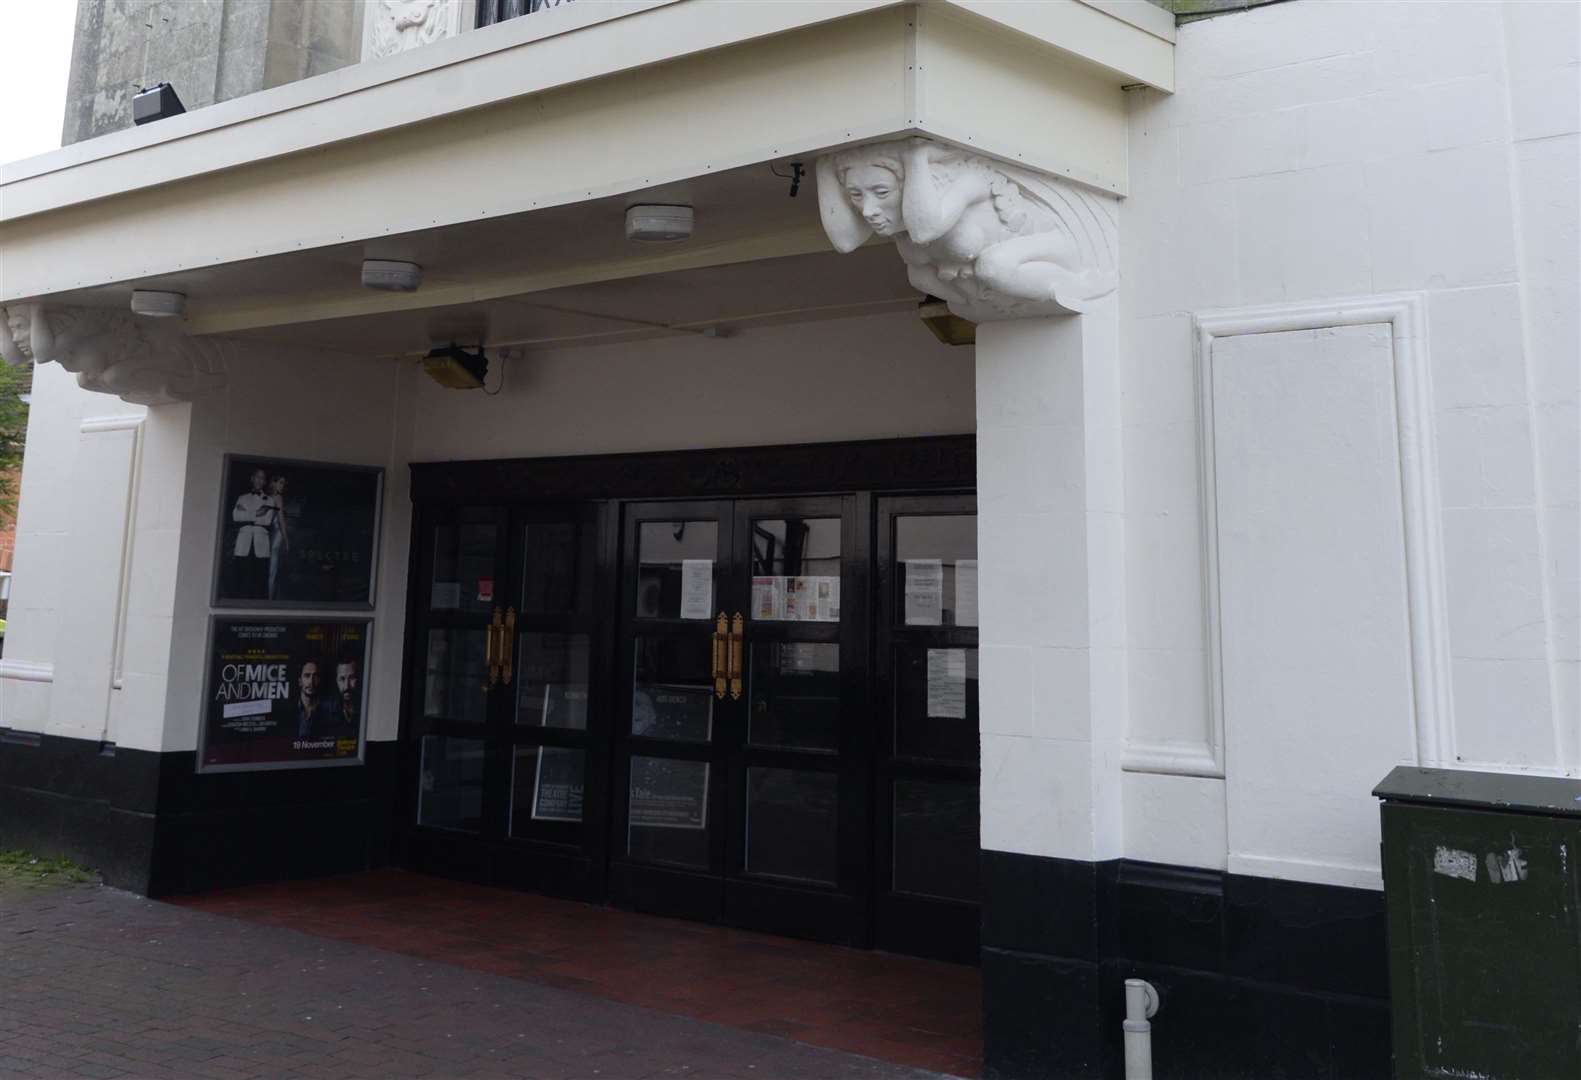 The Royal Cinema in Faversham